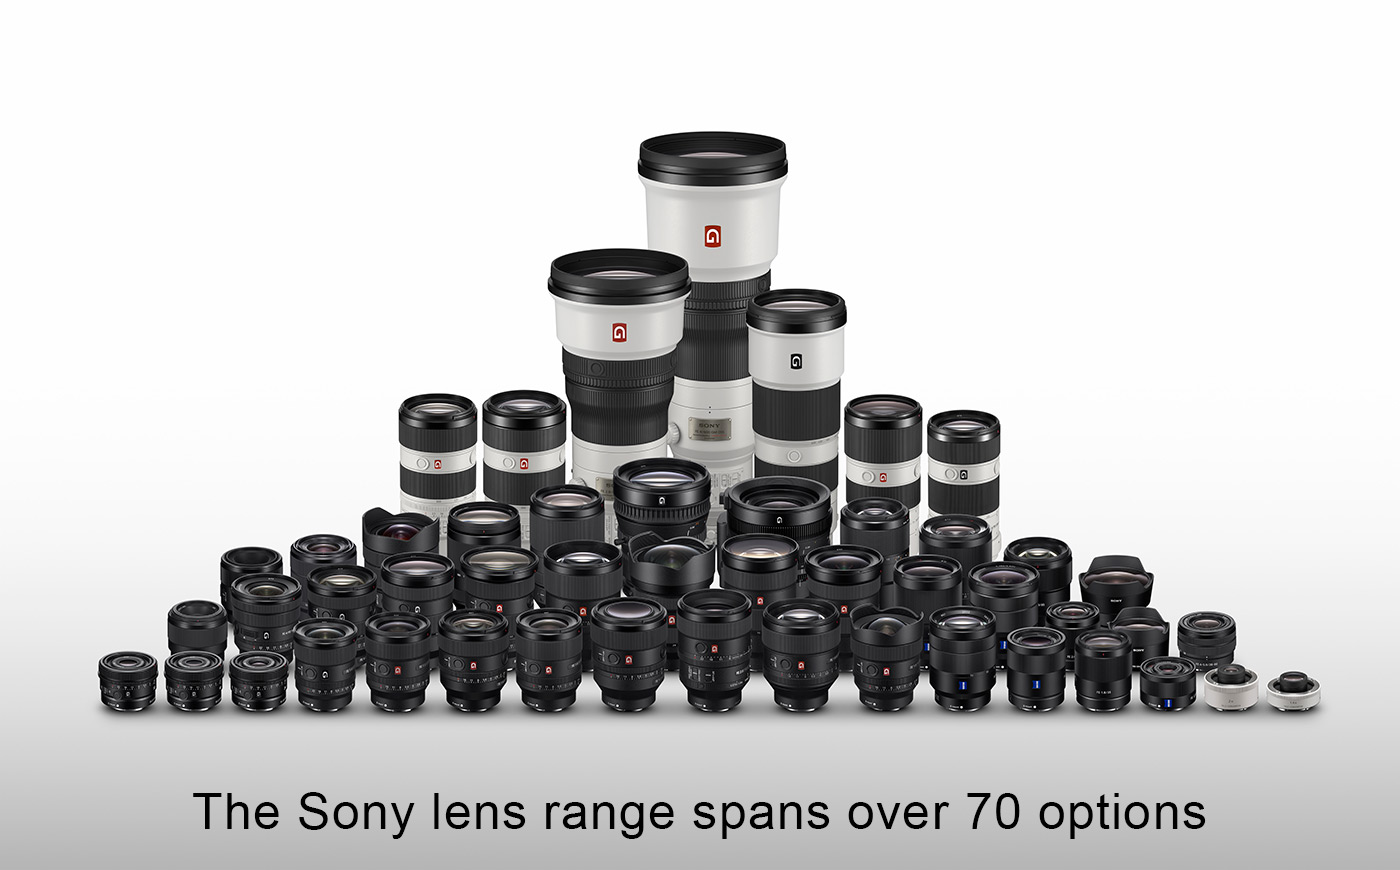 Sony lens range